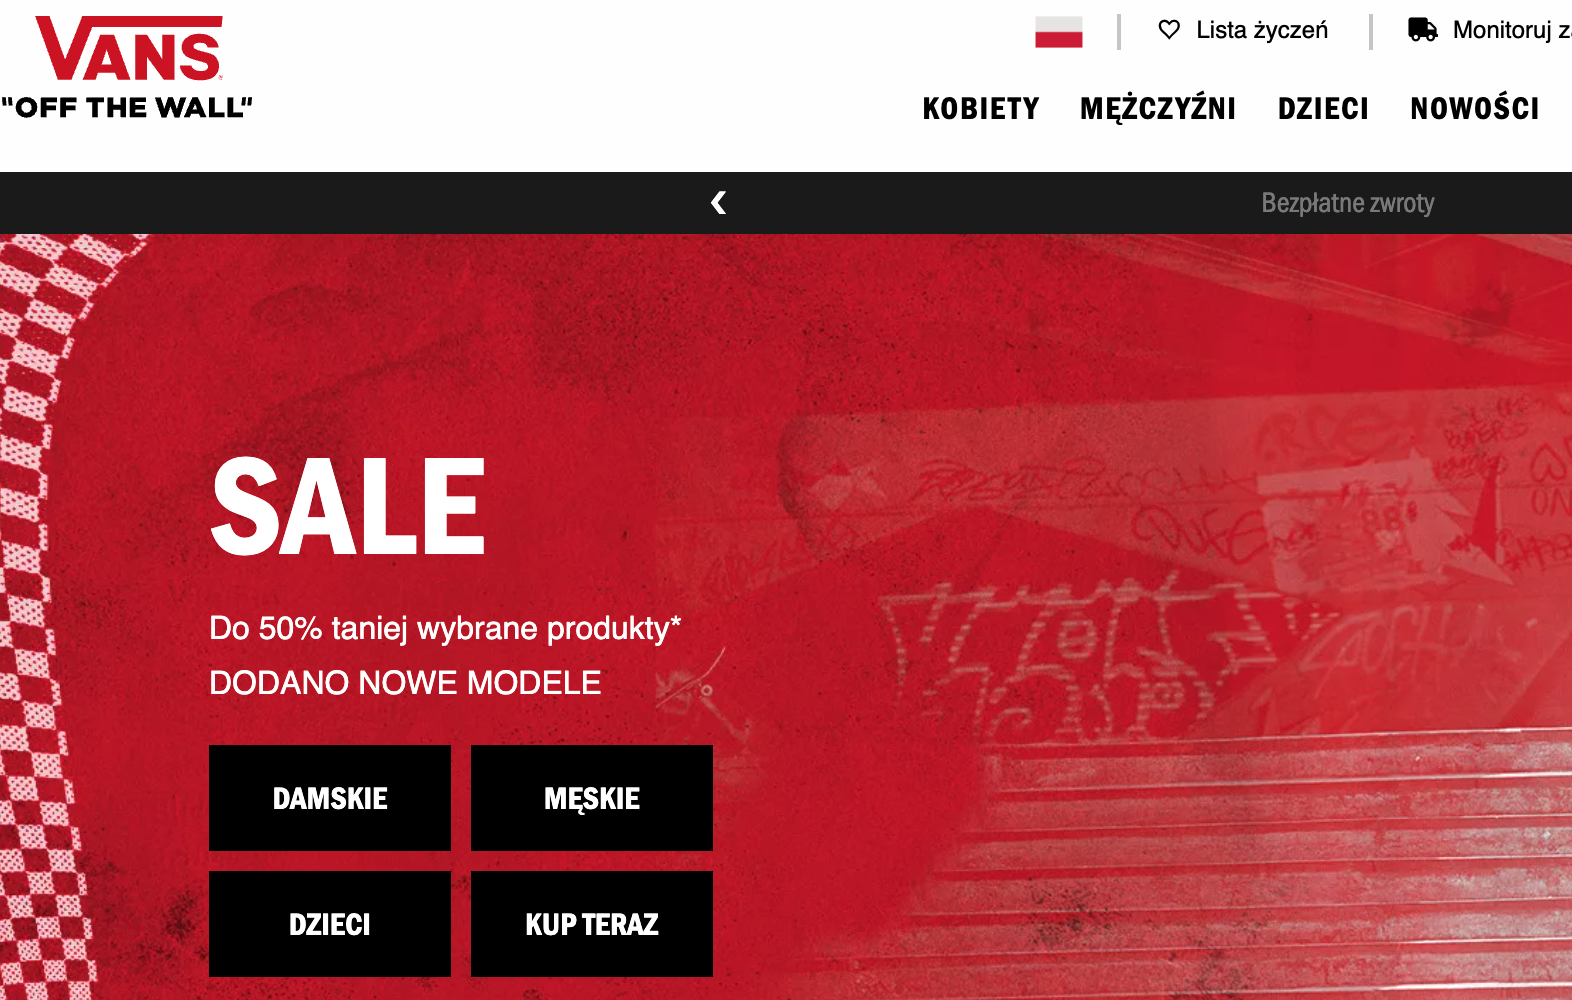 vans.pl: widok sklepu internetowego